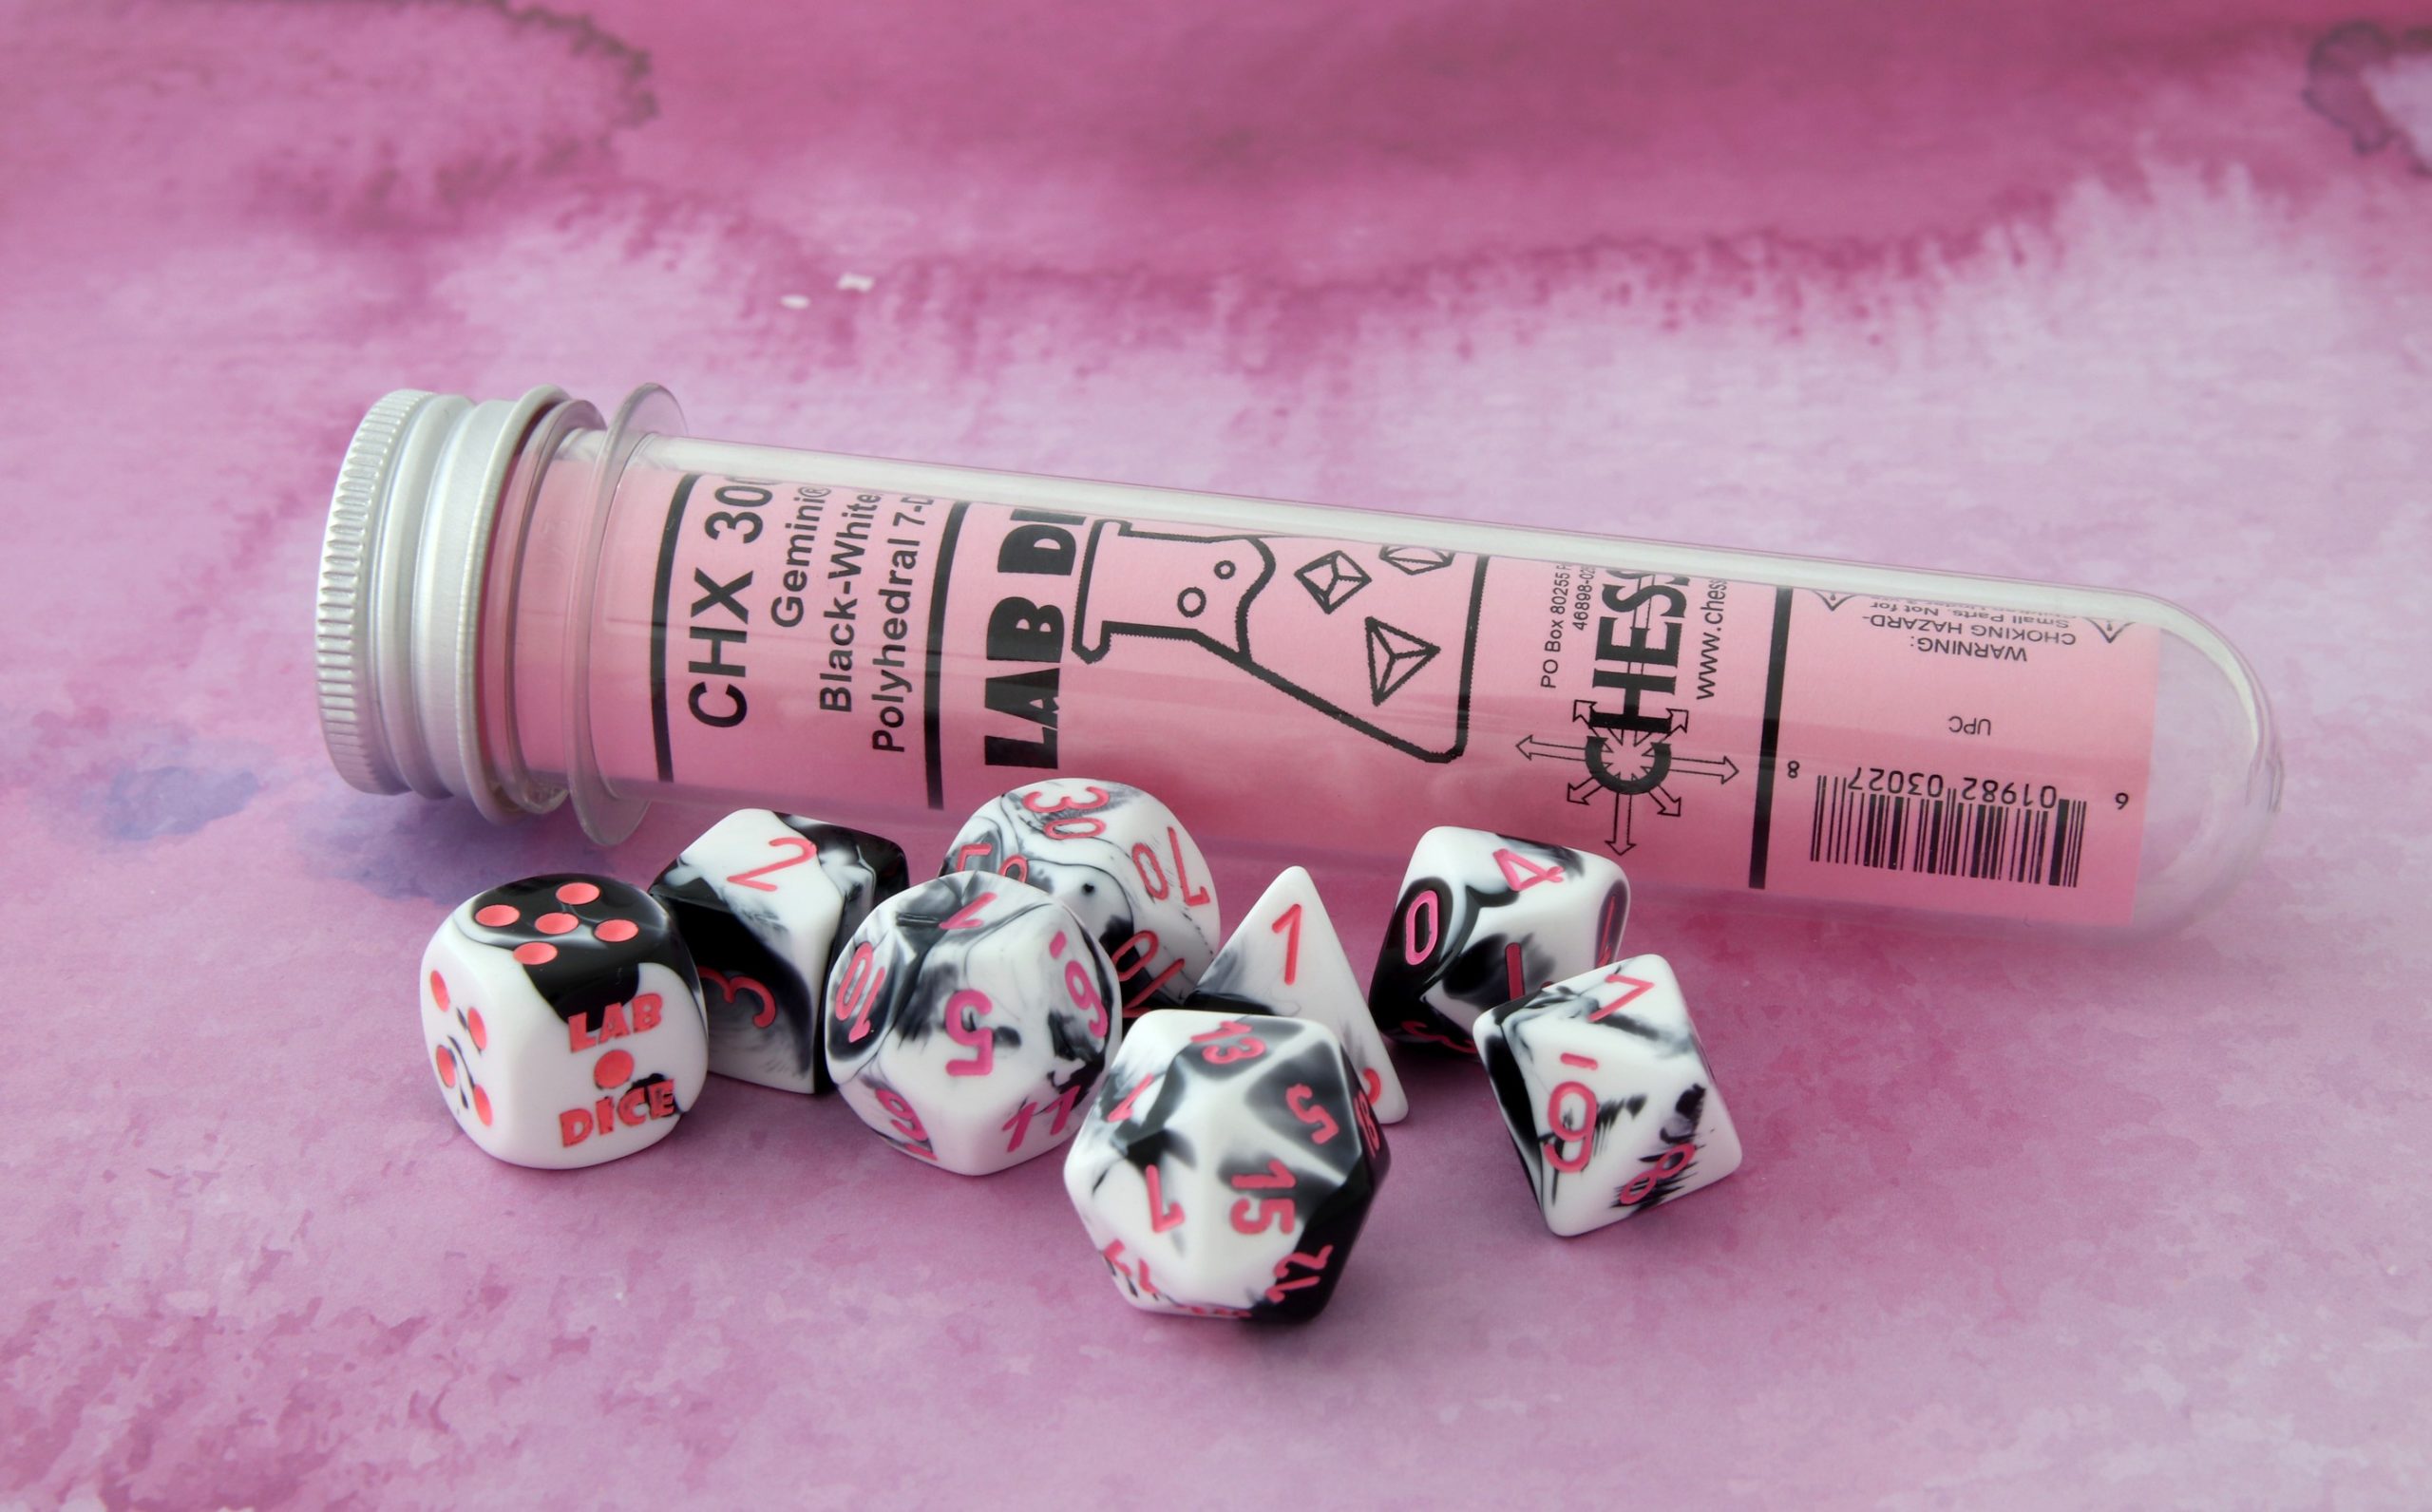 Chessex Gemini Black-White w/pink